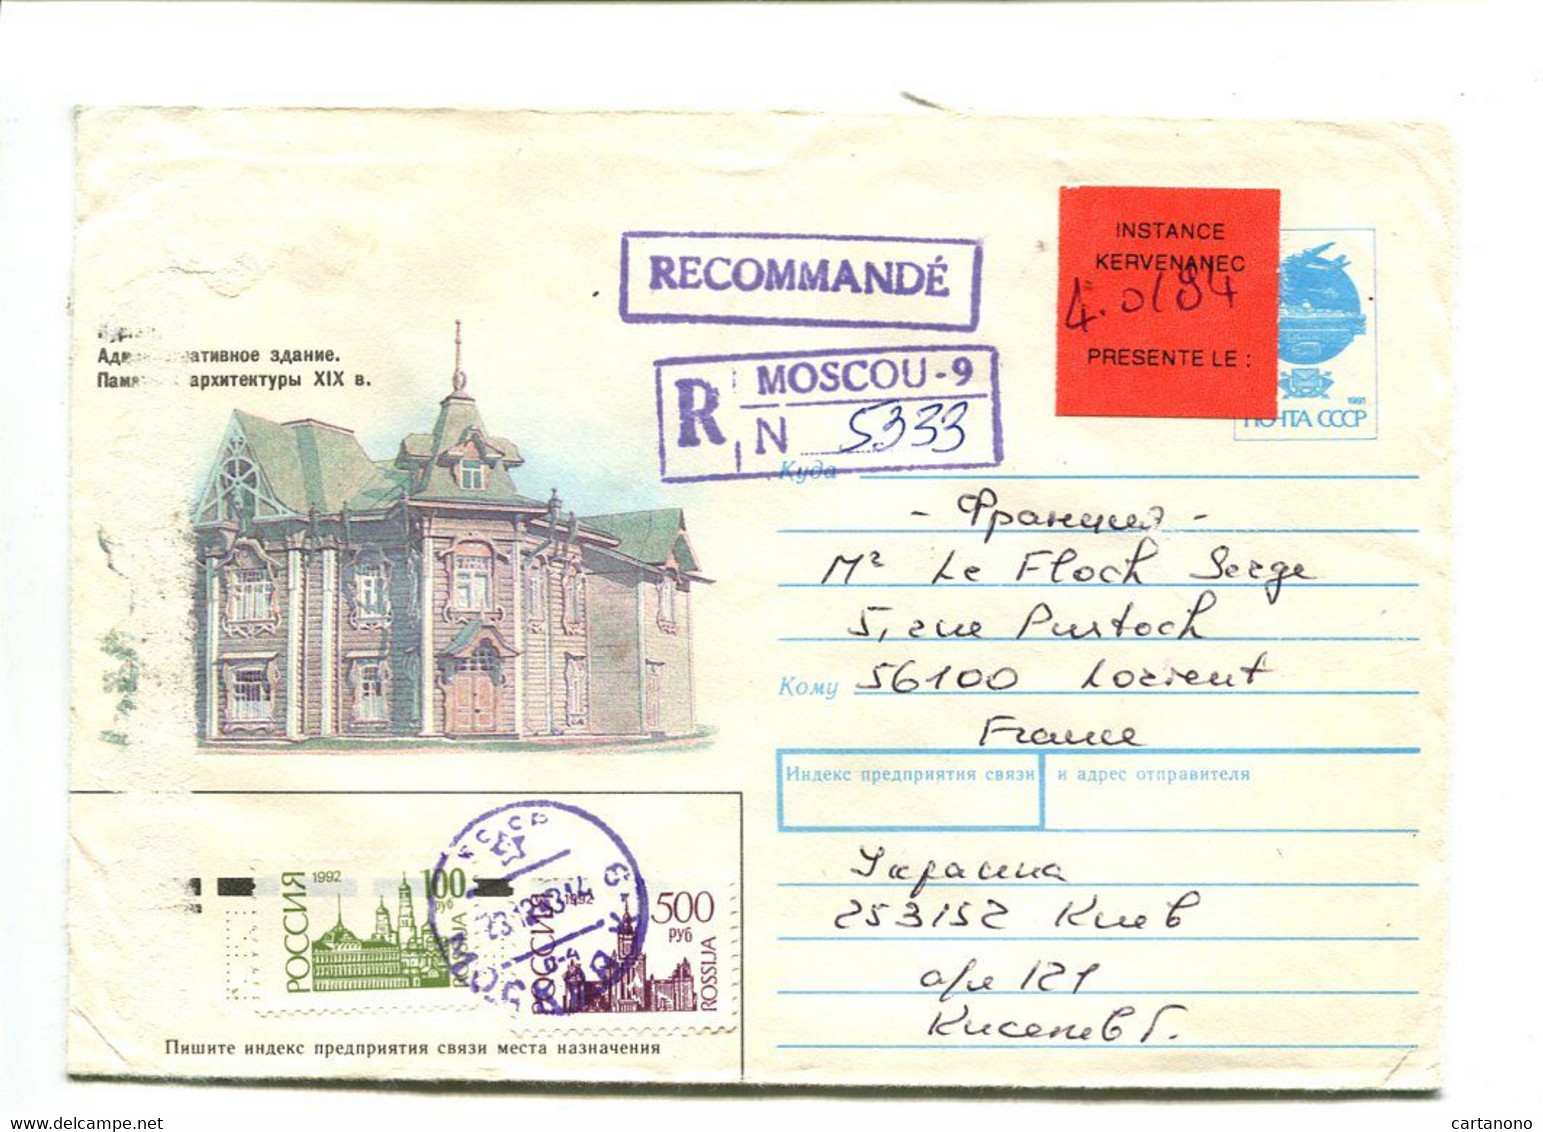 RUSSIE Moscou 1994 - Entier Postal Avec Complément D'affranchissement Pour Recommandation + Etiquette "Instance..." - Covers & Documents